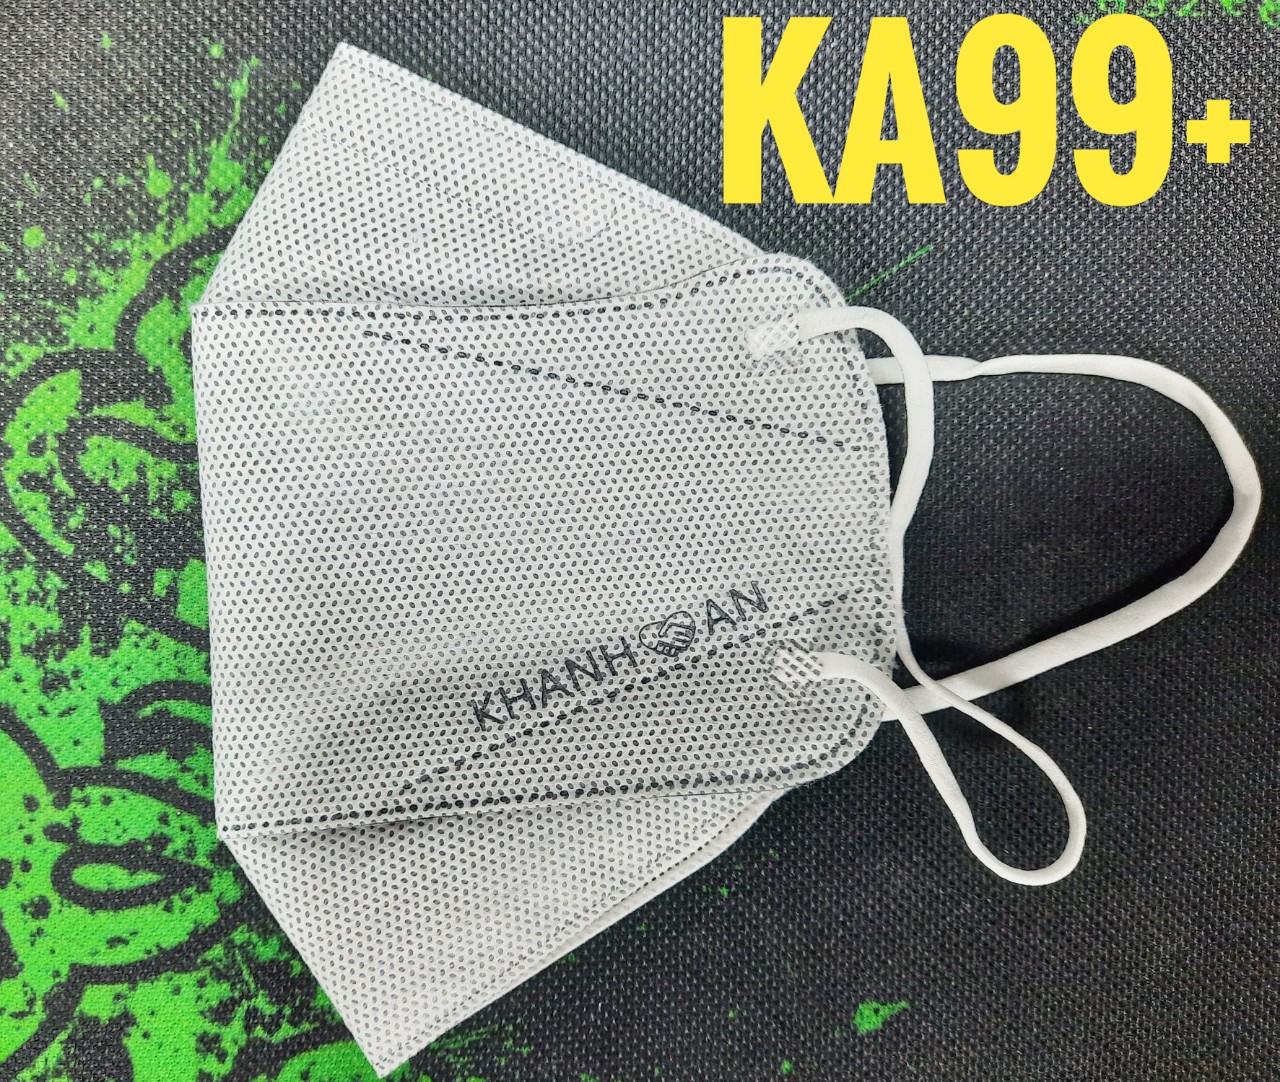 30 cái Khẩu trang y tế 4D Khánh An KA99+ 4 lớp ngăn vi khuẩn 99% thiết kế đặc biệt Nhượng quyền nguyên bản Hàn Quốc ôm sát khuôn mặt không dính son và rất dễ thở